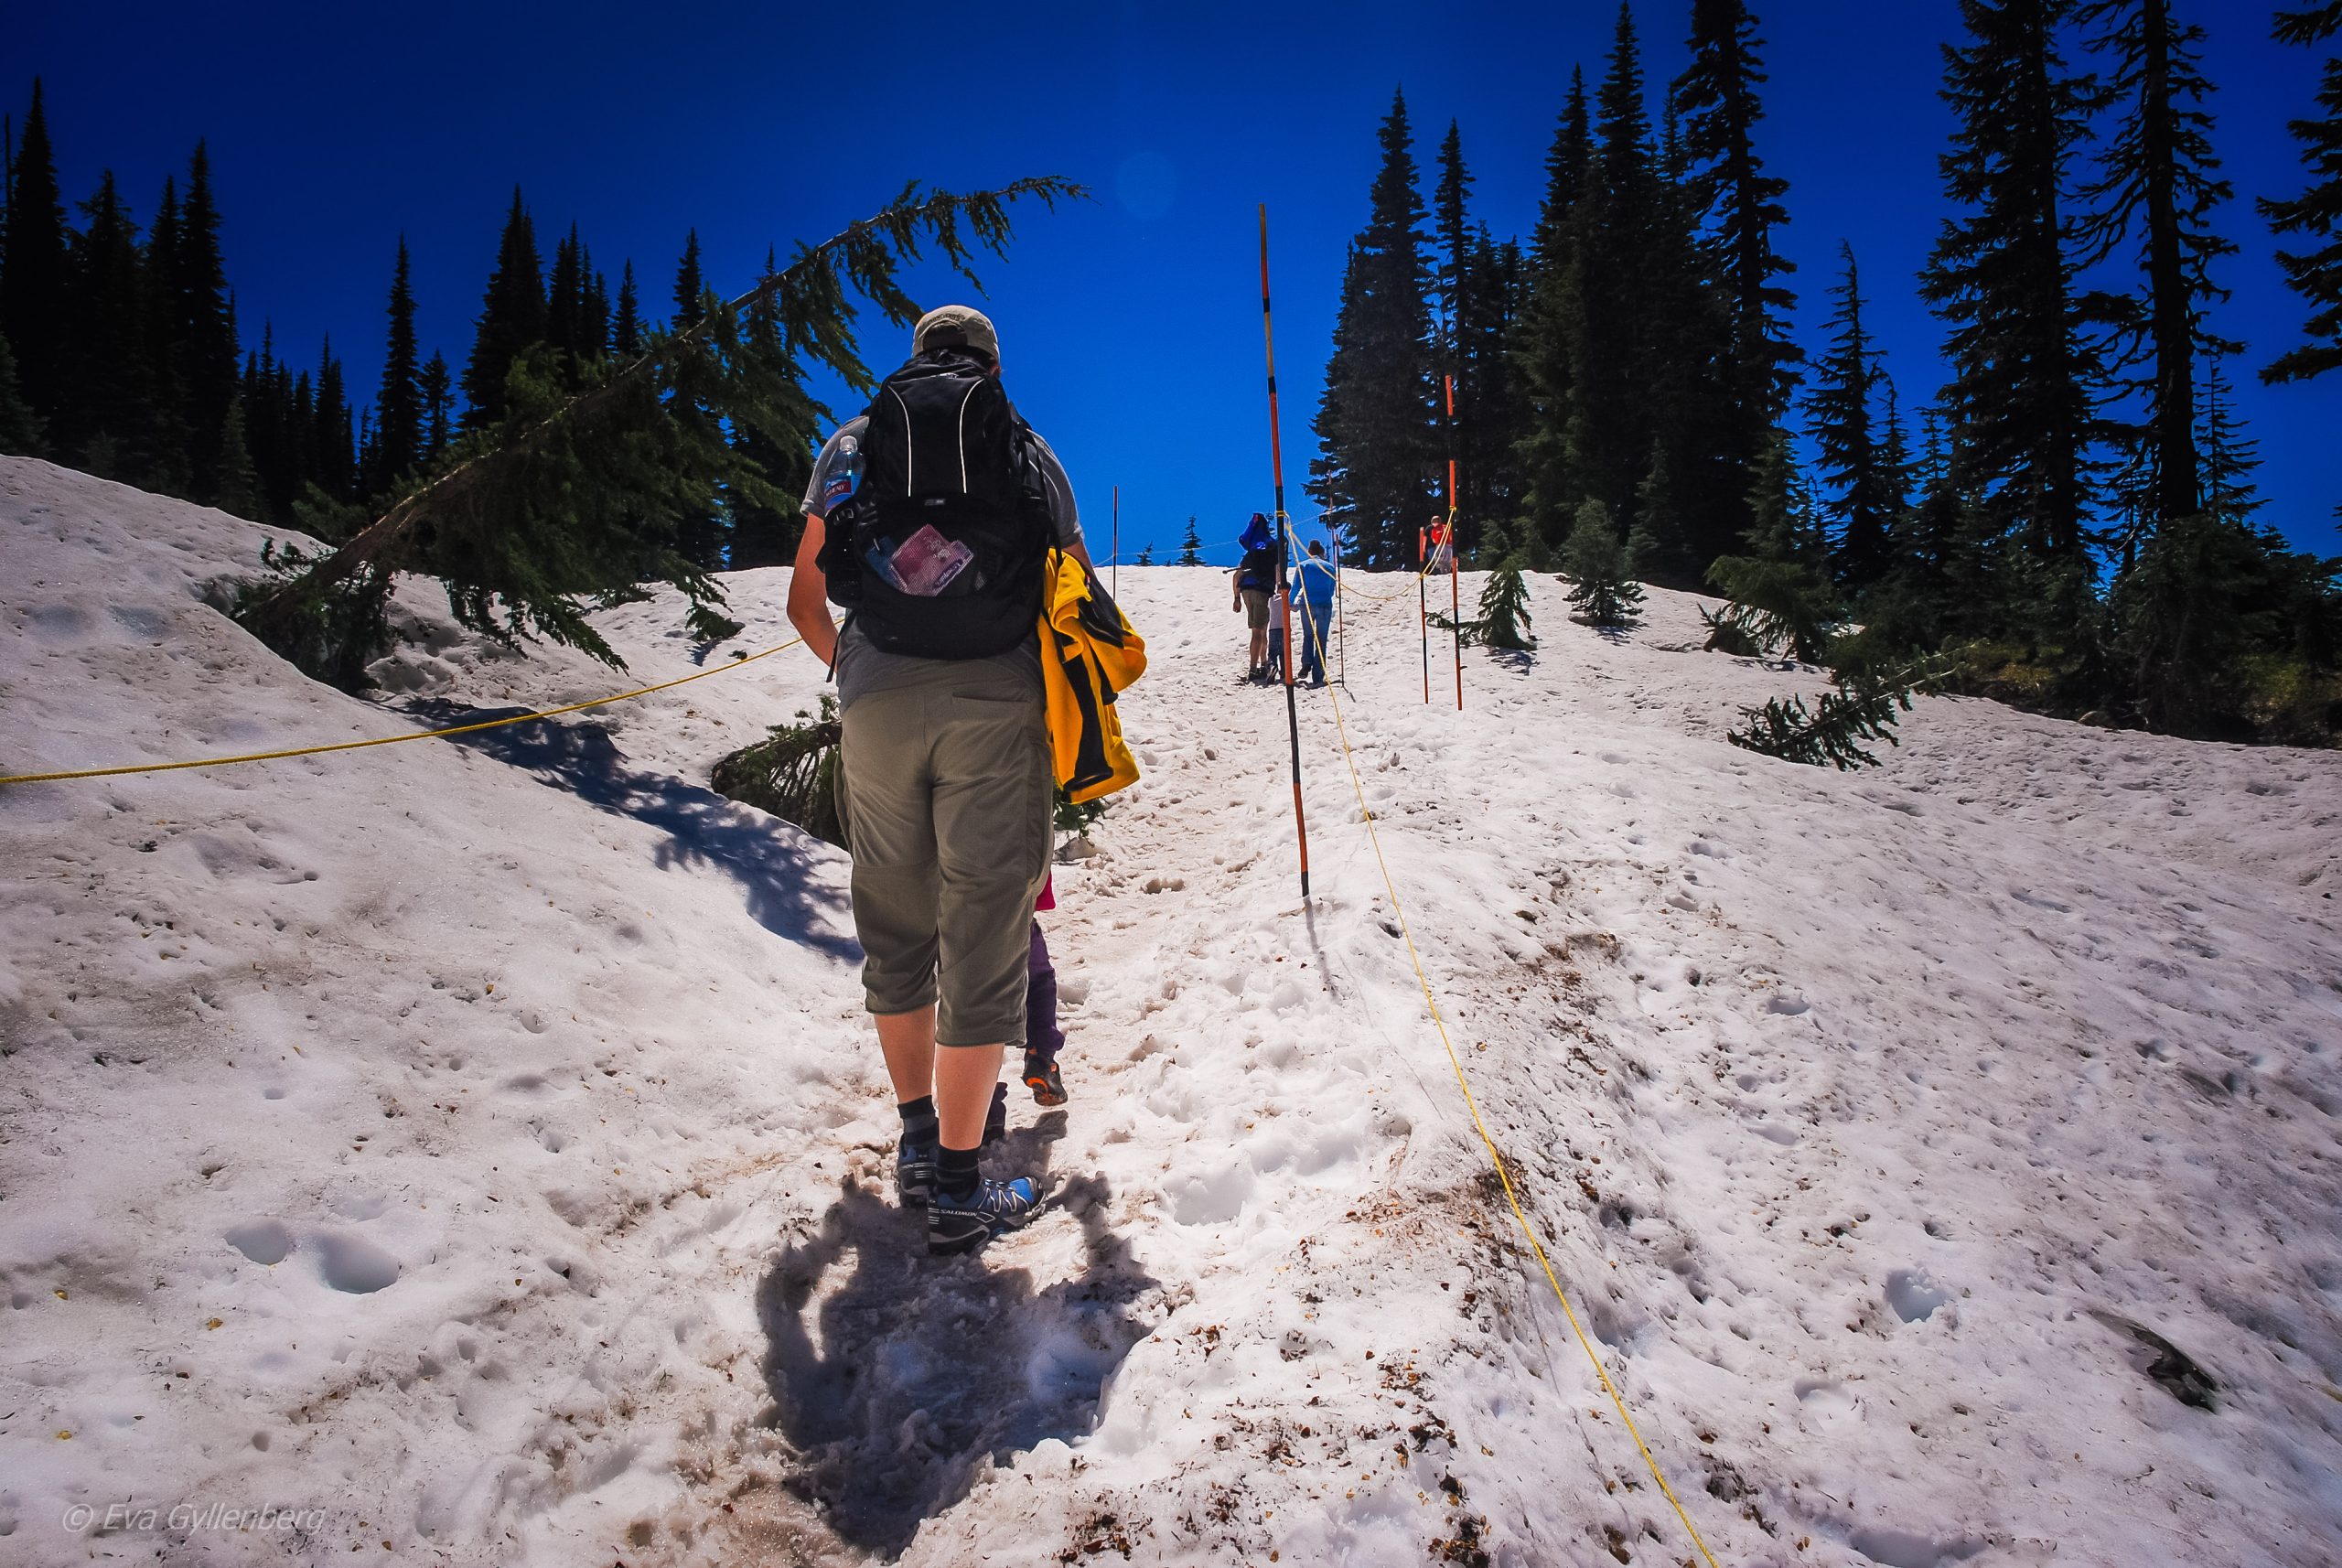 Sommarvandring på snö - Mount Rainier - Washington